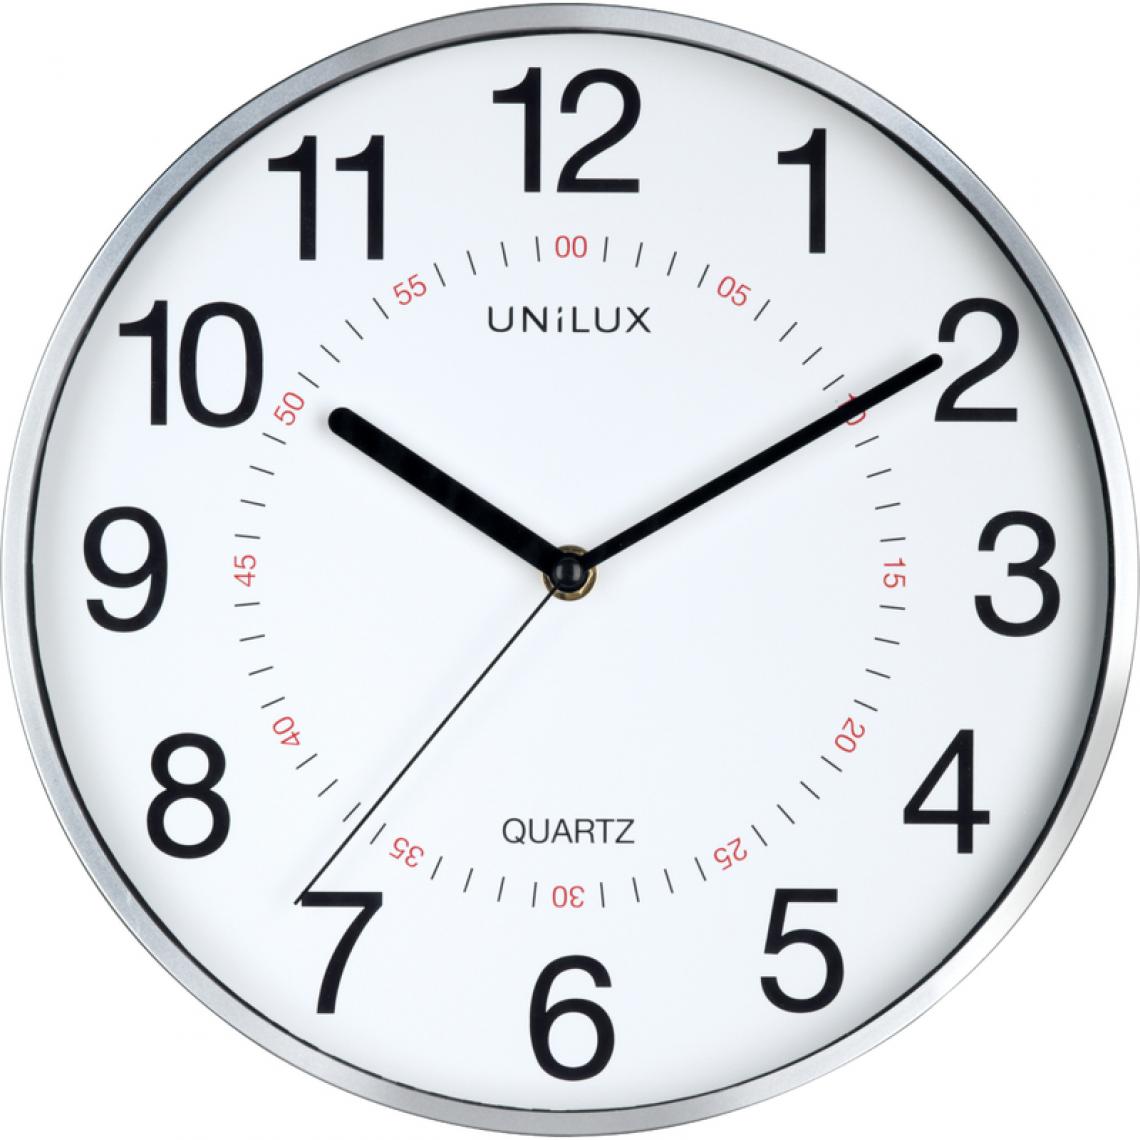 Unilux - UNiLUX Horloge murale à quartz 'ARIA', diamètre: 285 mm () - Télérupteurs, minuteries et horloges